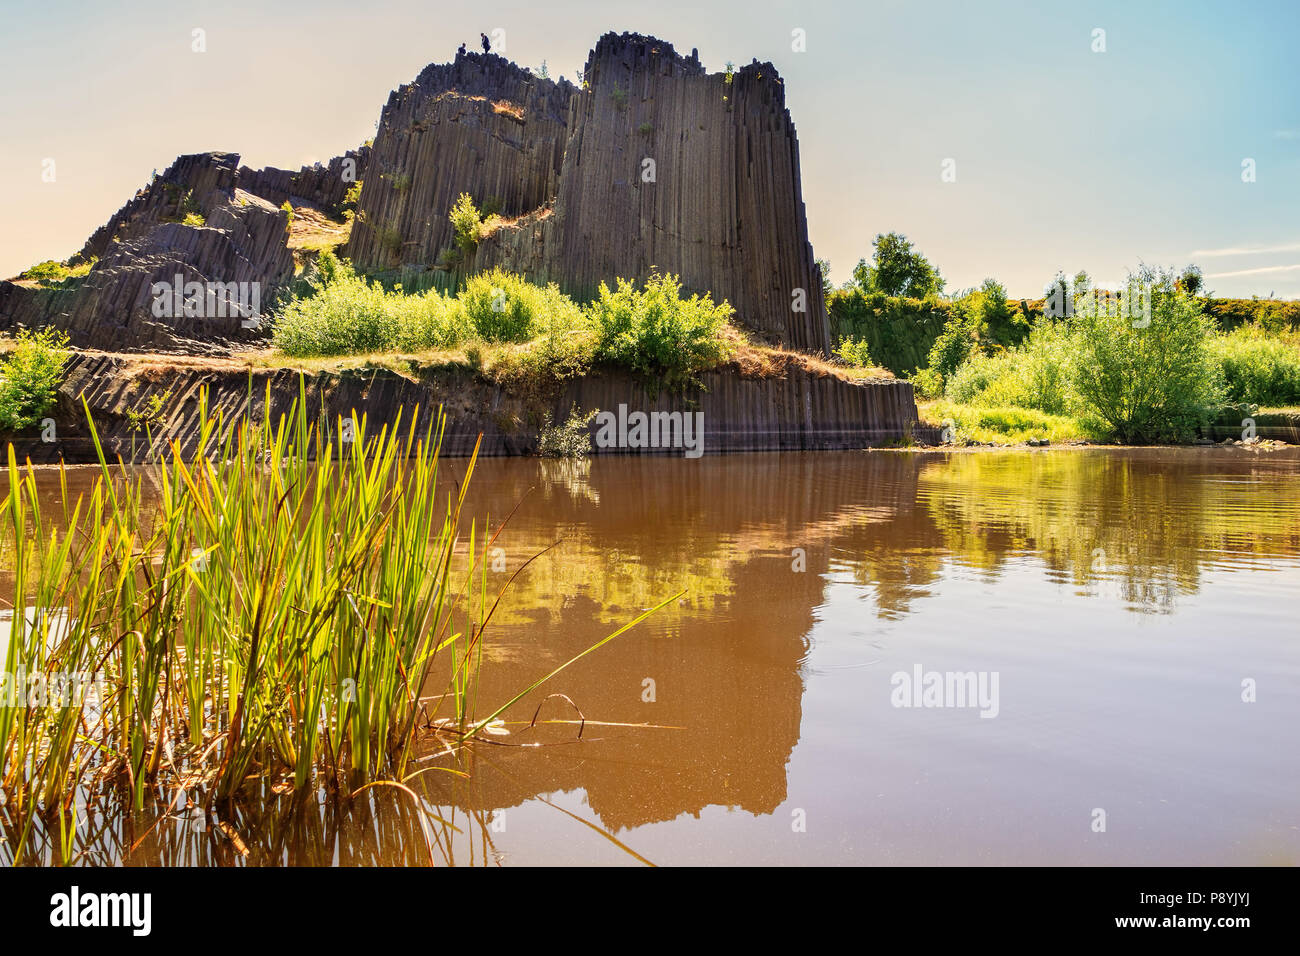 Roccia di basalto con la riflessione sulle acque del lago. Famoso paesaggio landmark chiamato Panska skala a Kamenicky Senov a nord della Repubblica ceca, 150 km nort Foto Stock